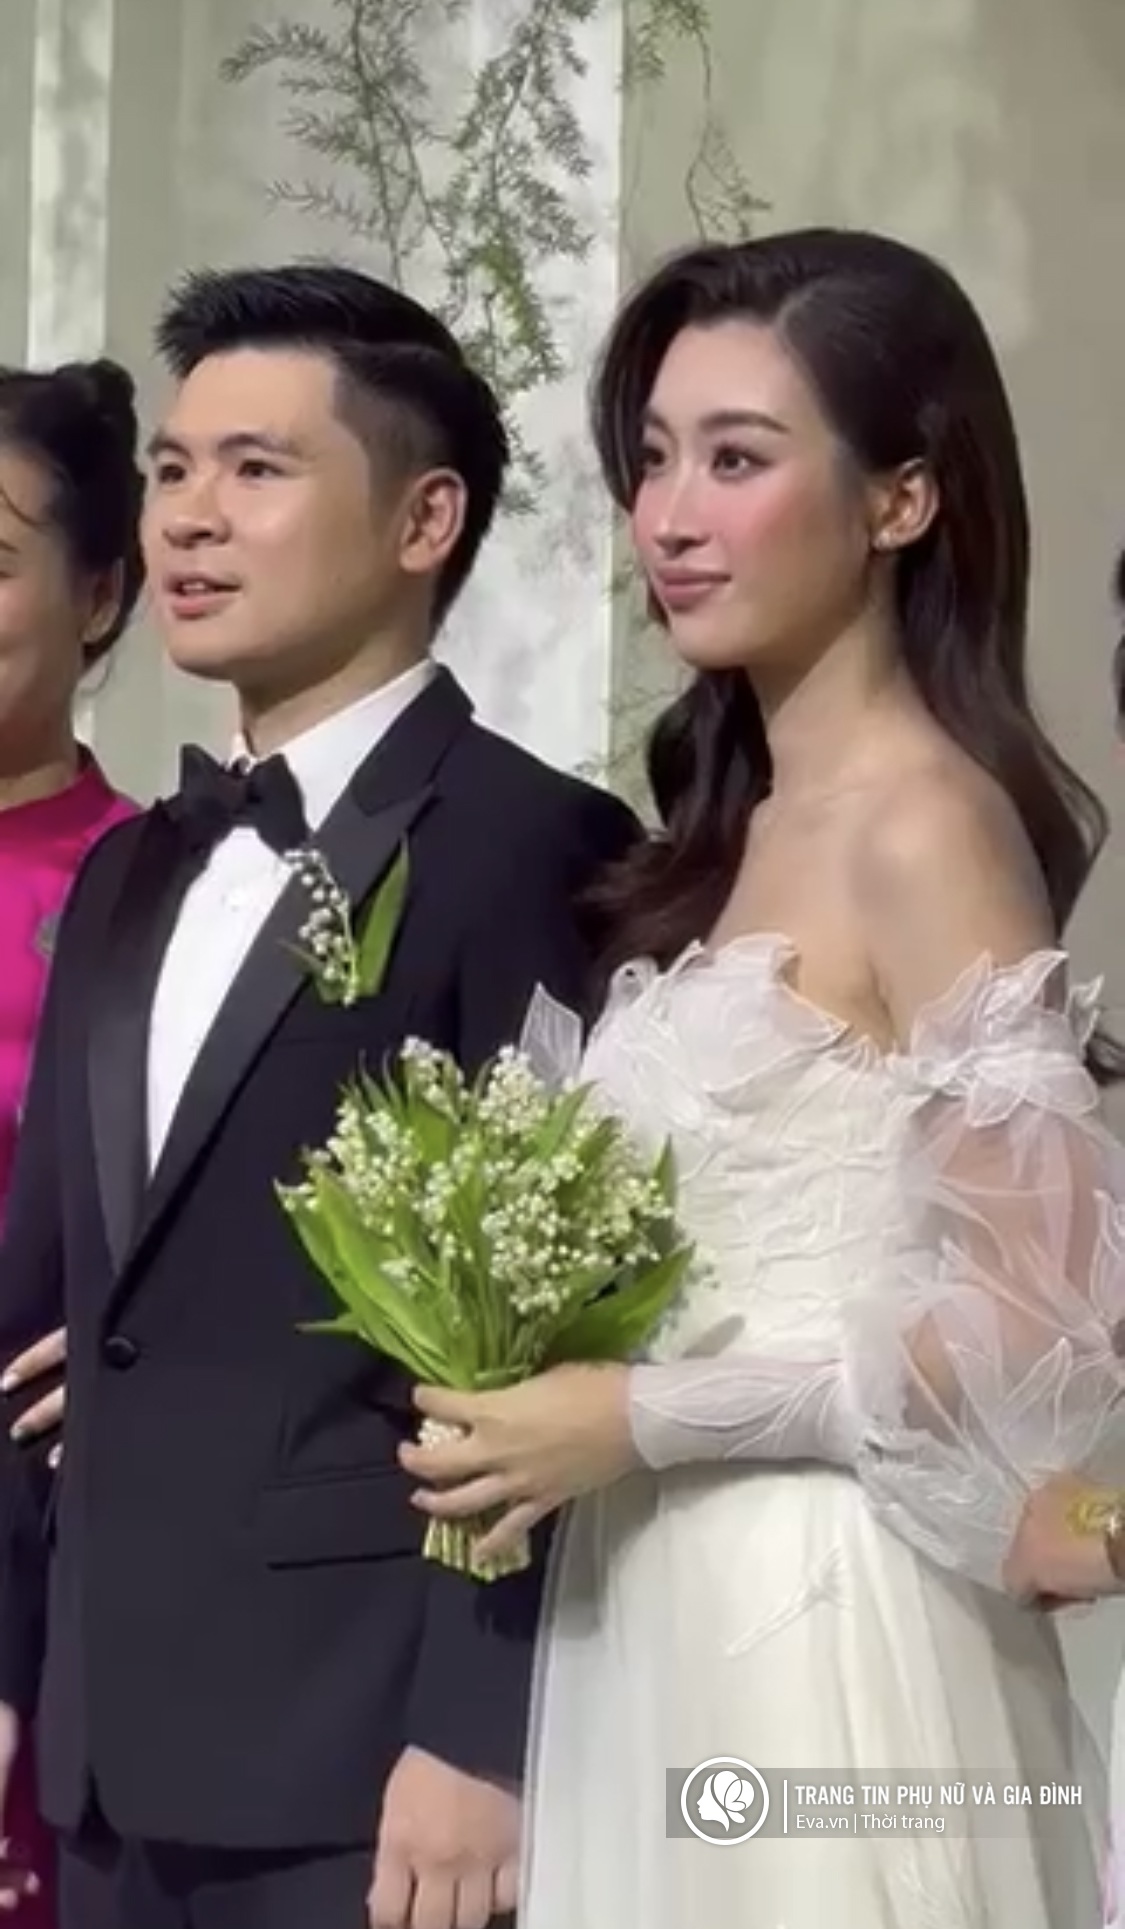 Đỗ Mỹ Linh xuất hiện rạng ngời bên chú rể Đỗ Vinh Quang, cô dâu đẹp nhất Hà Nội đây rồi! - 1